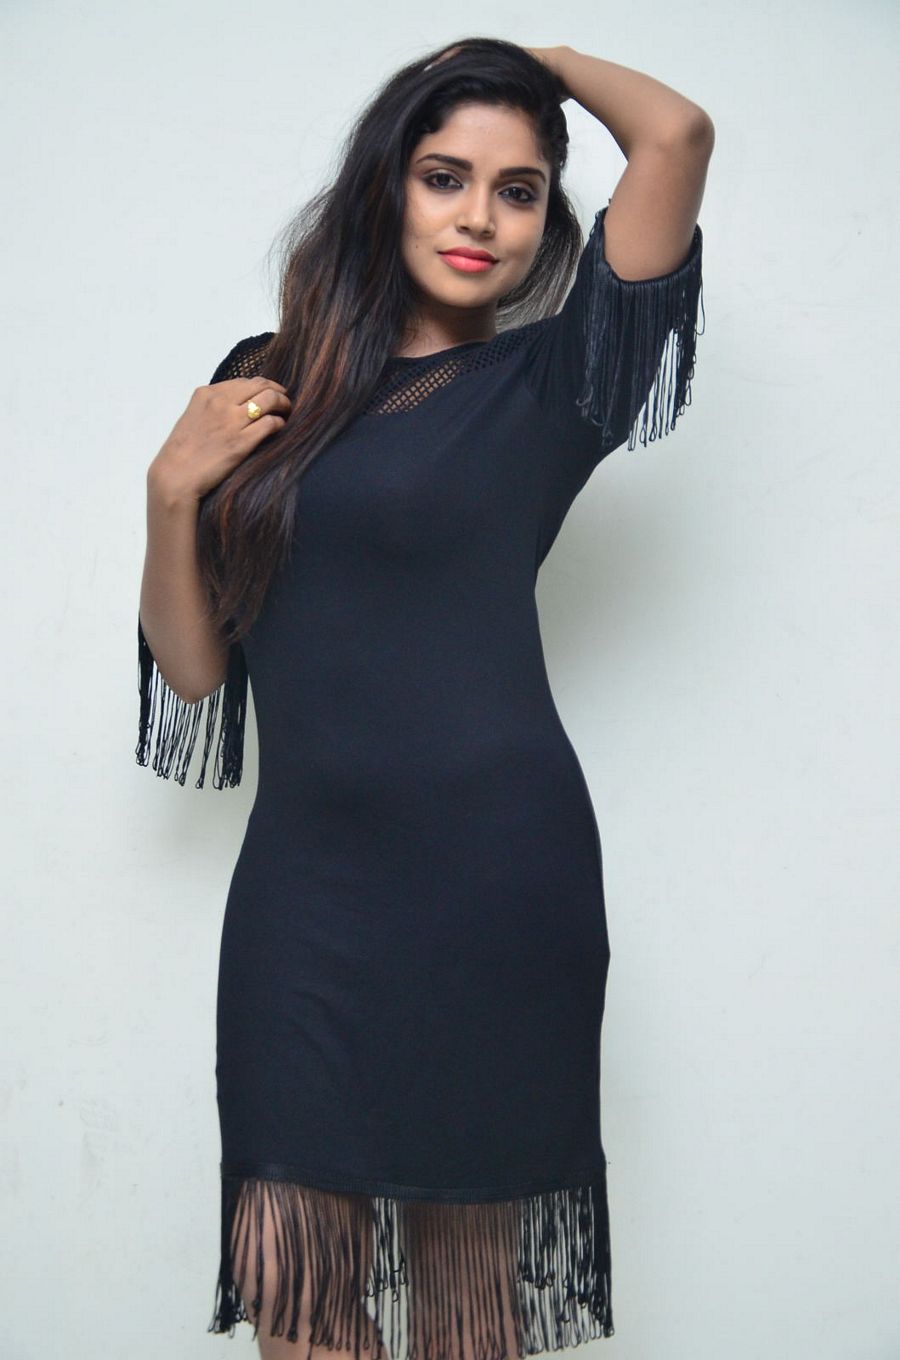 Actress Karunya Chowdary Photos